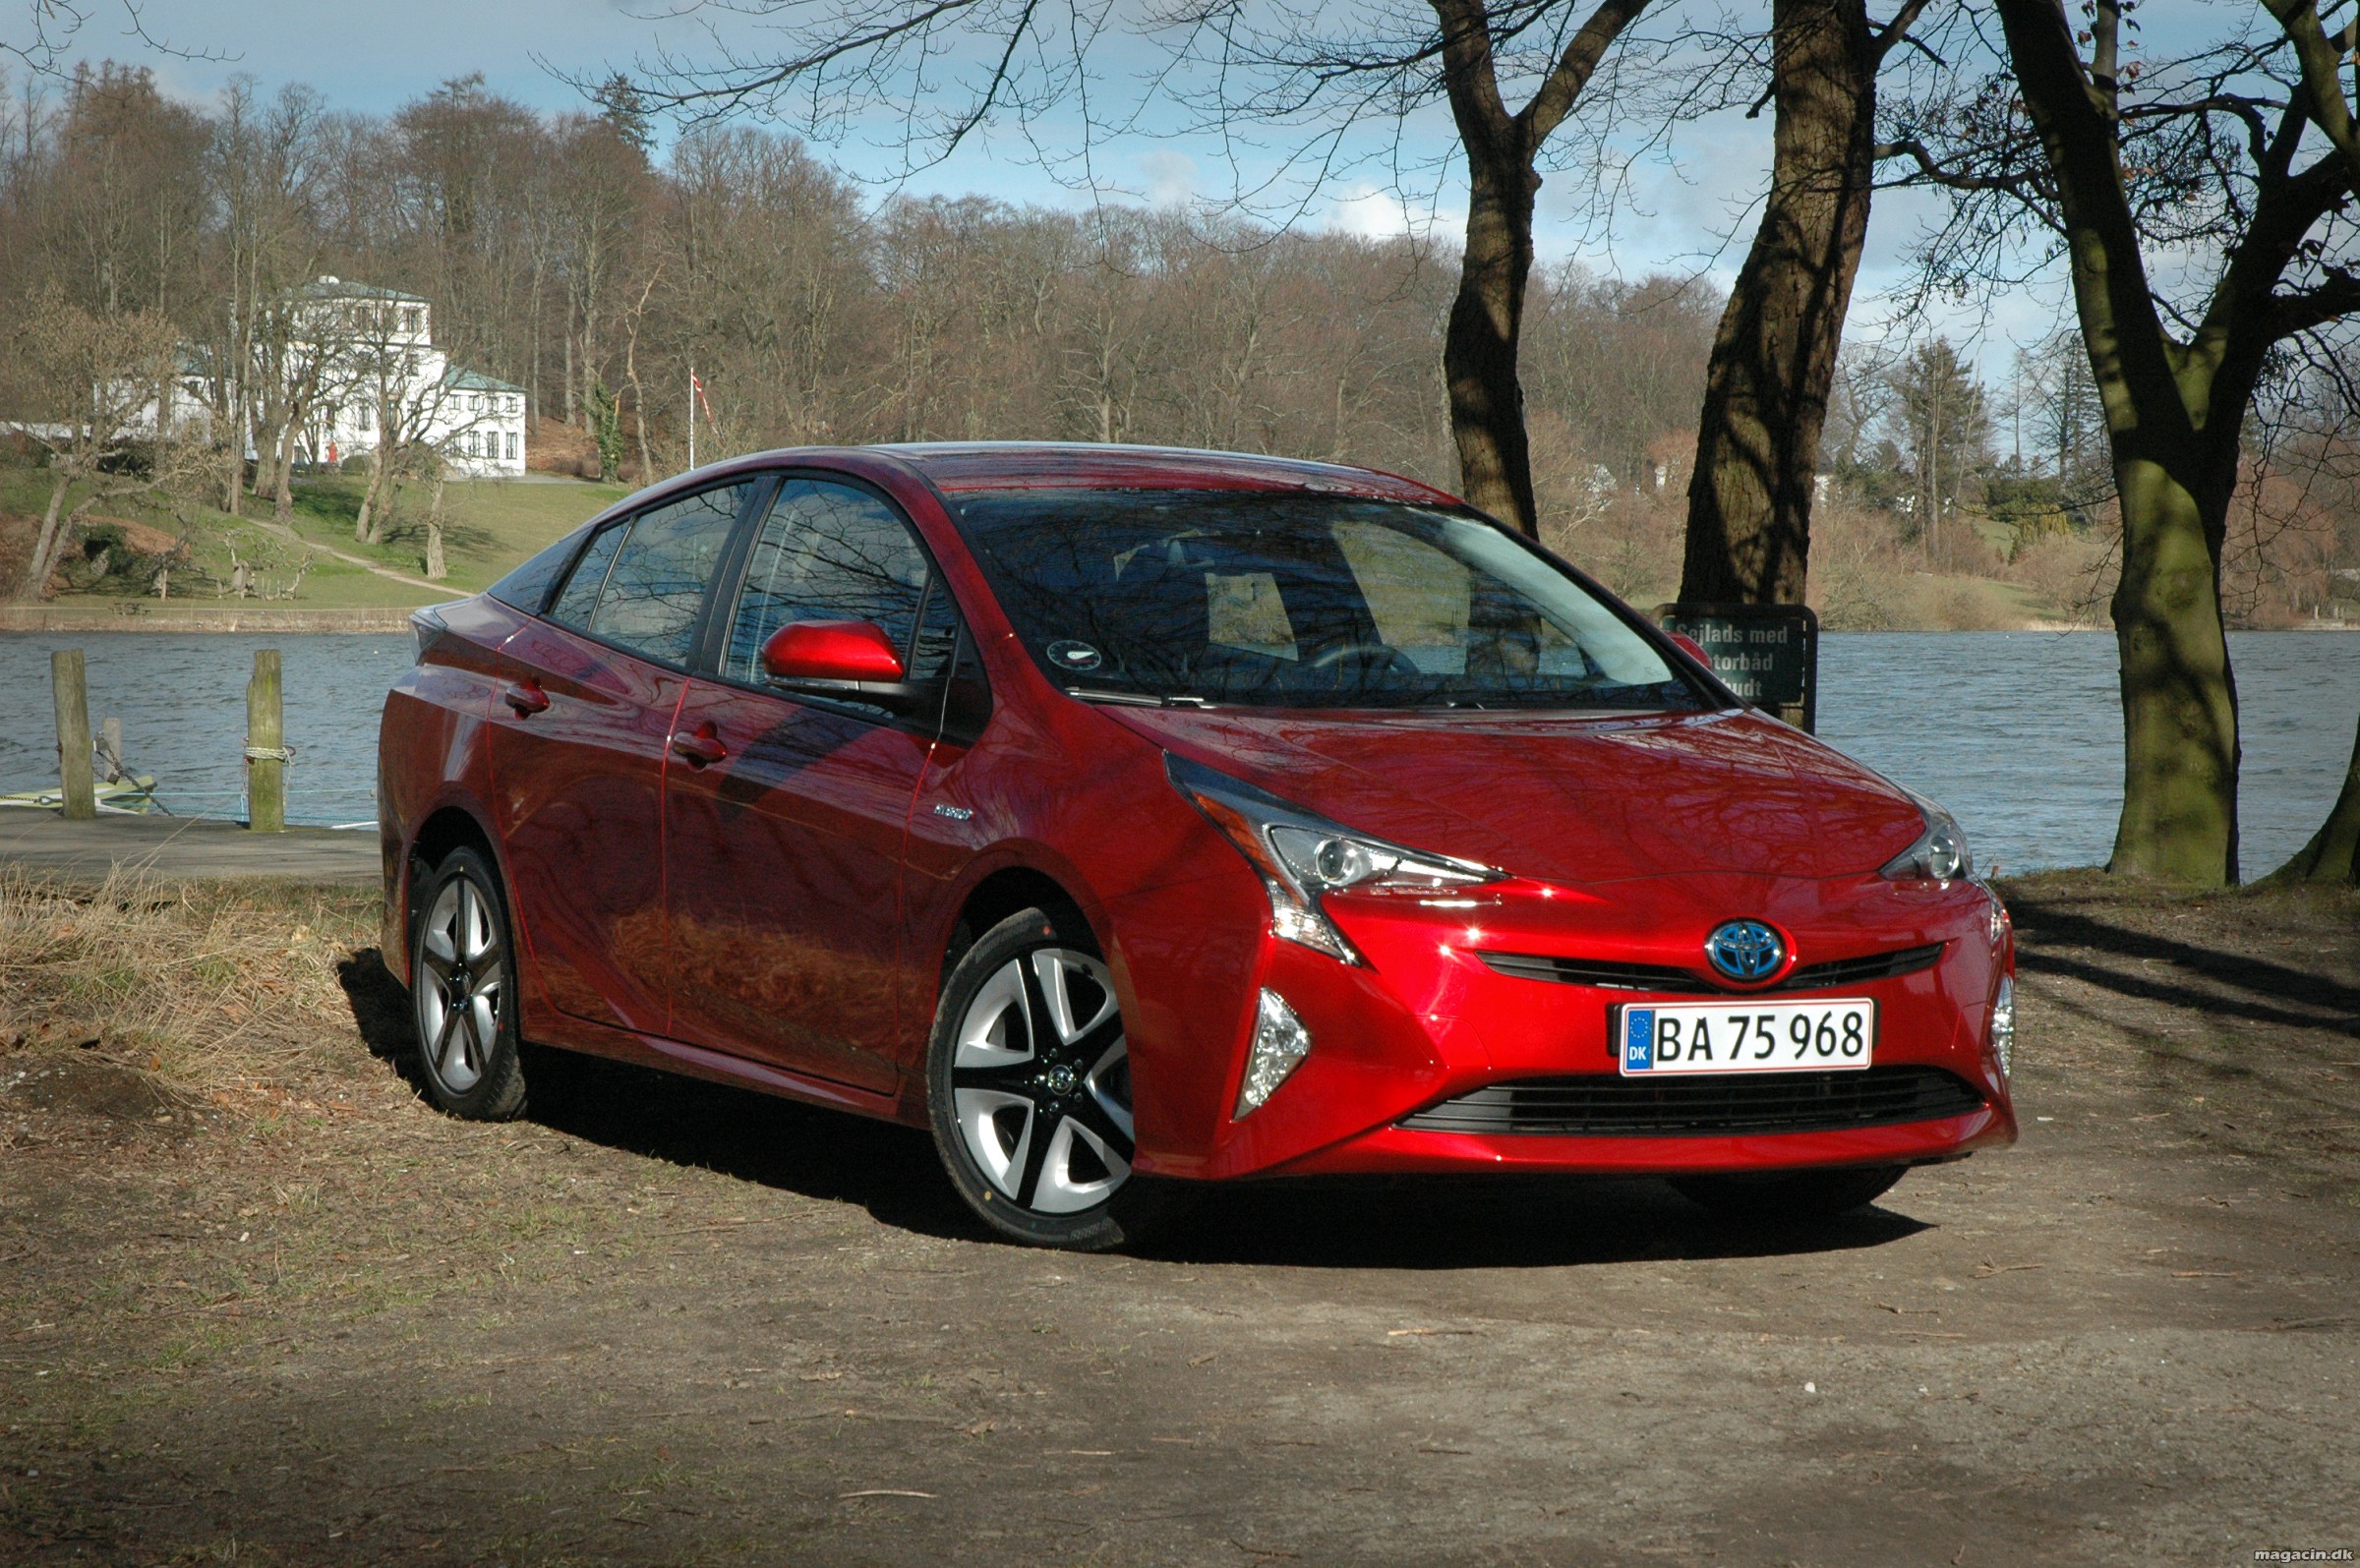 Ny Toyota Prius helt i top i sikkerhedstest